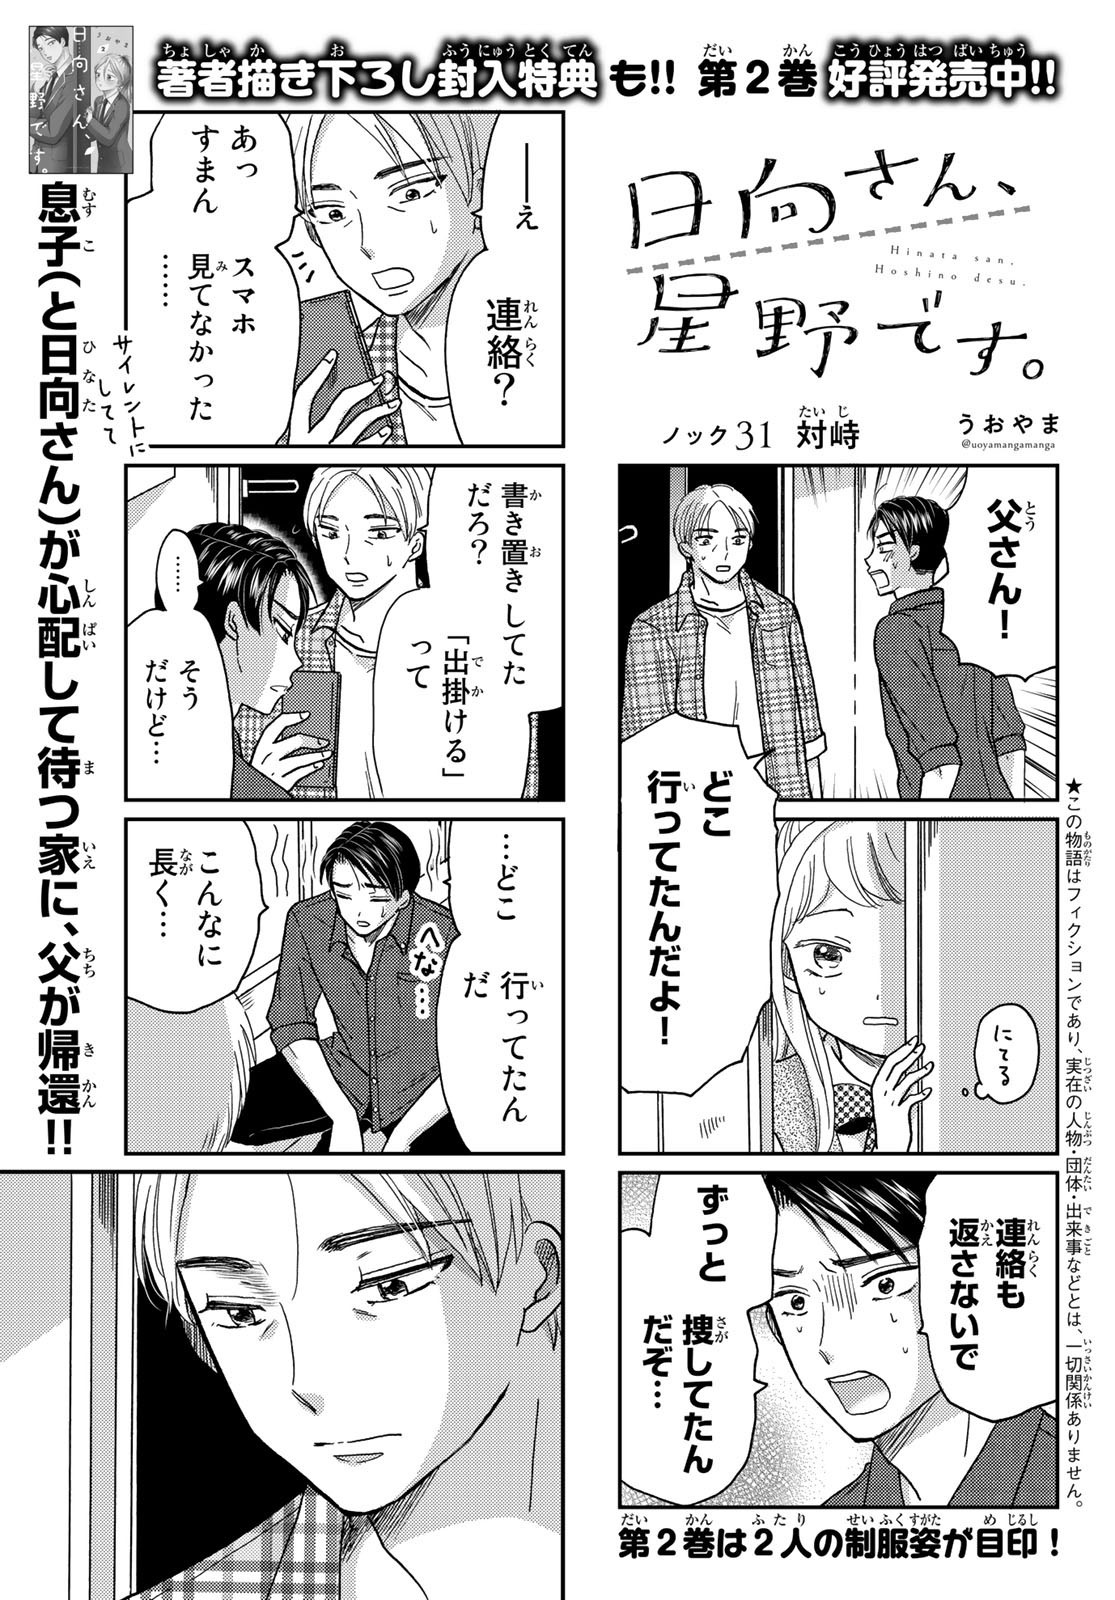 Hinata-san, Hoshino desu. - Chapter 031 - Page 1